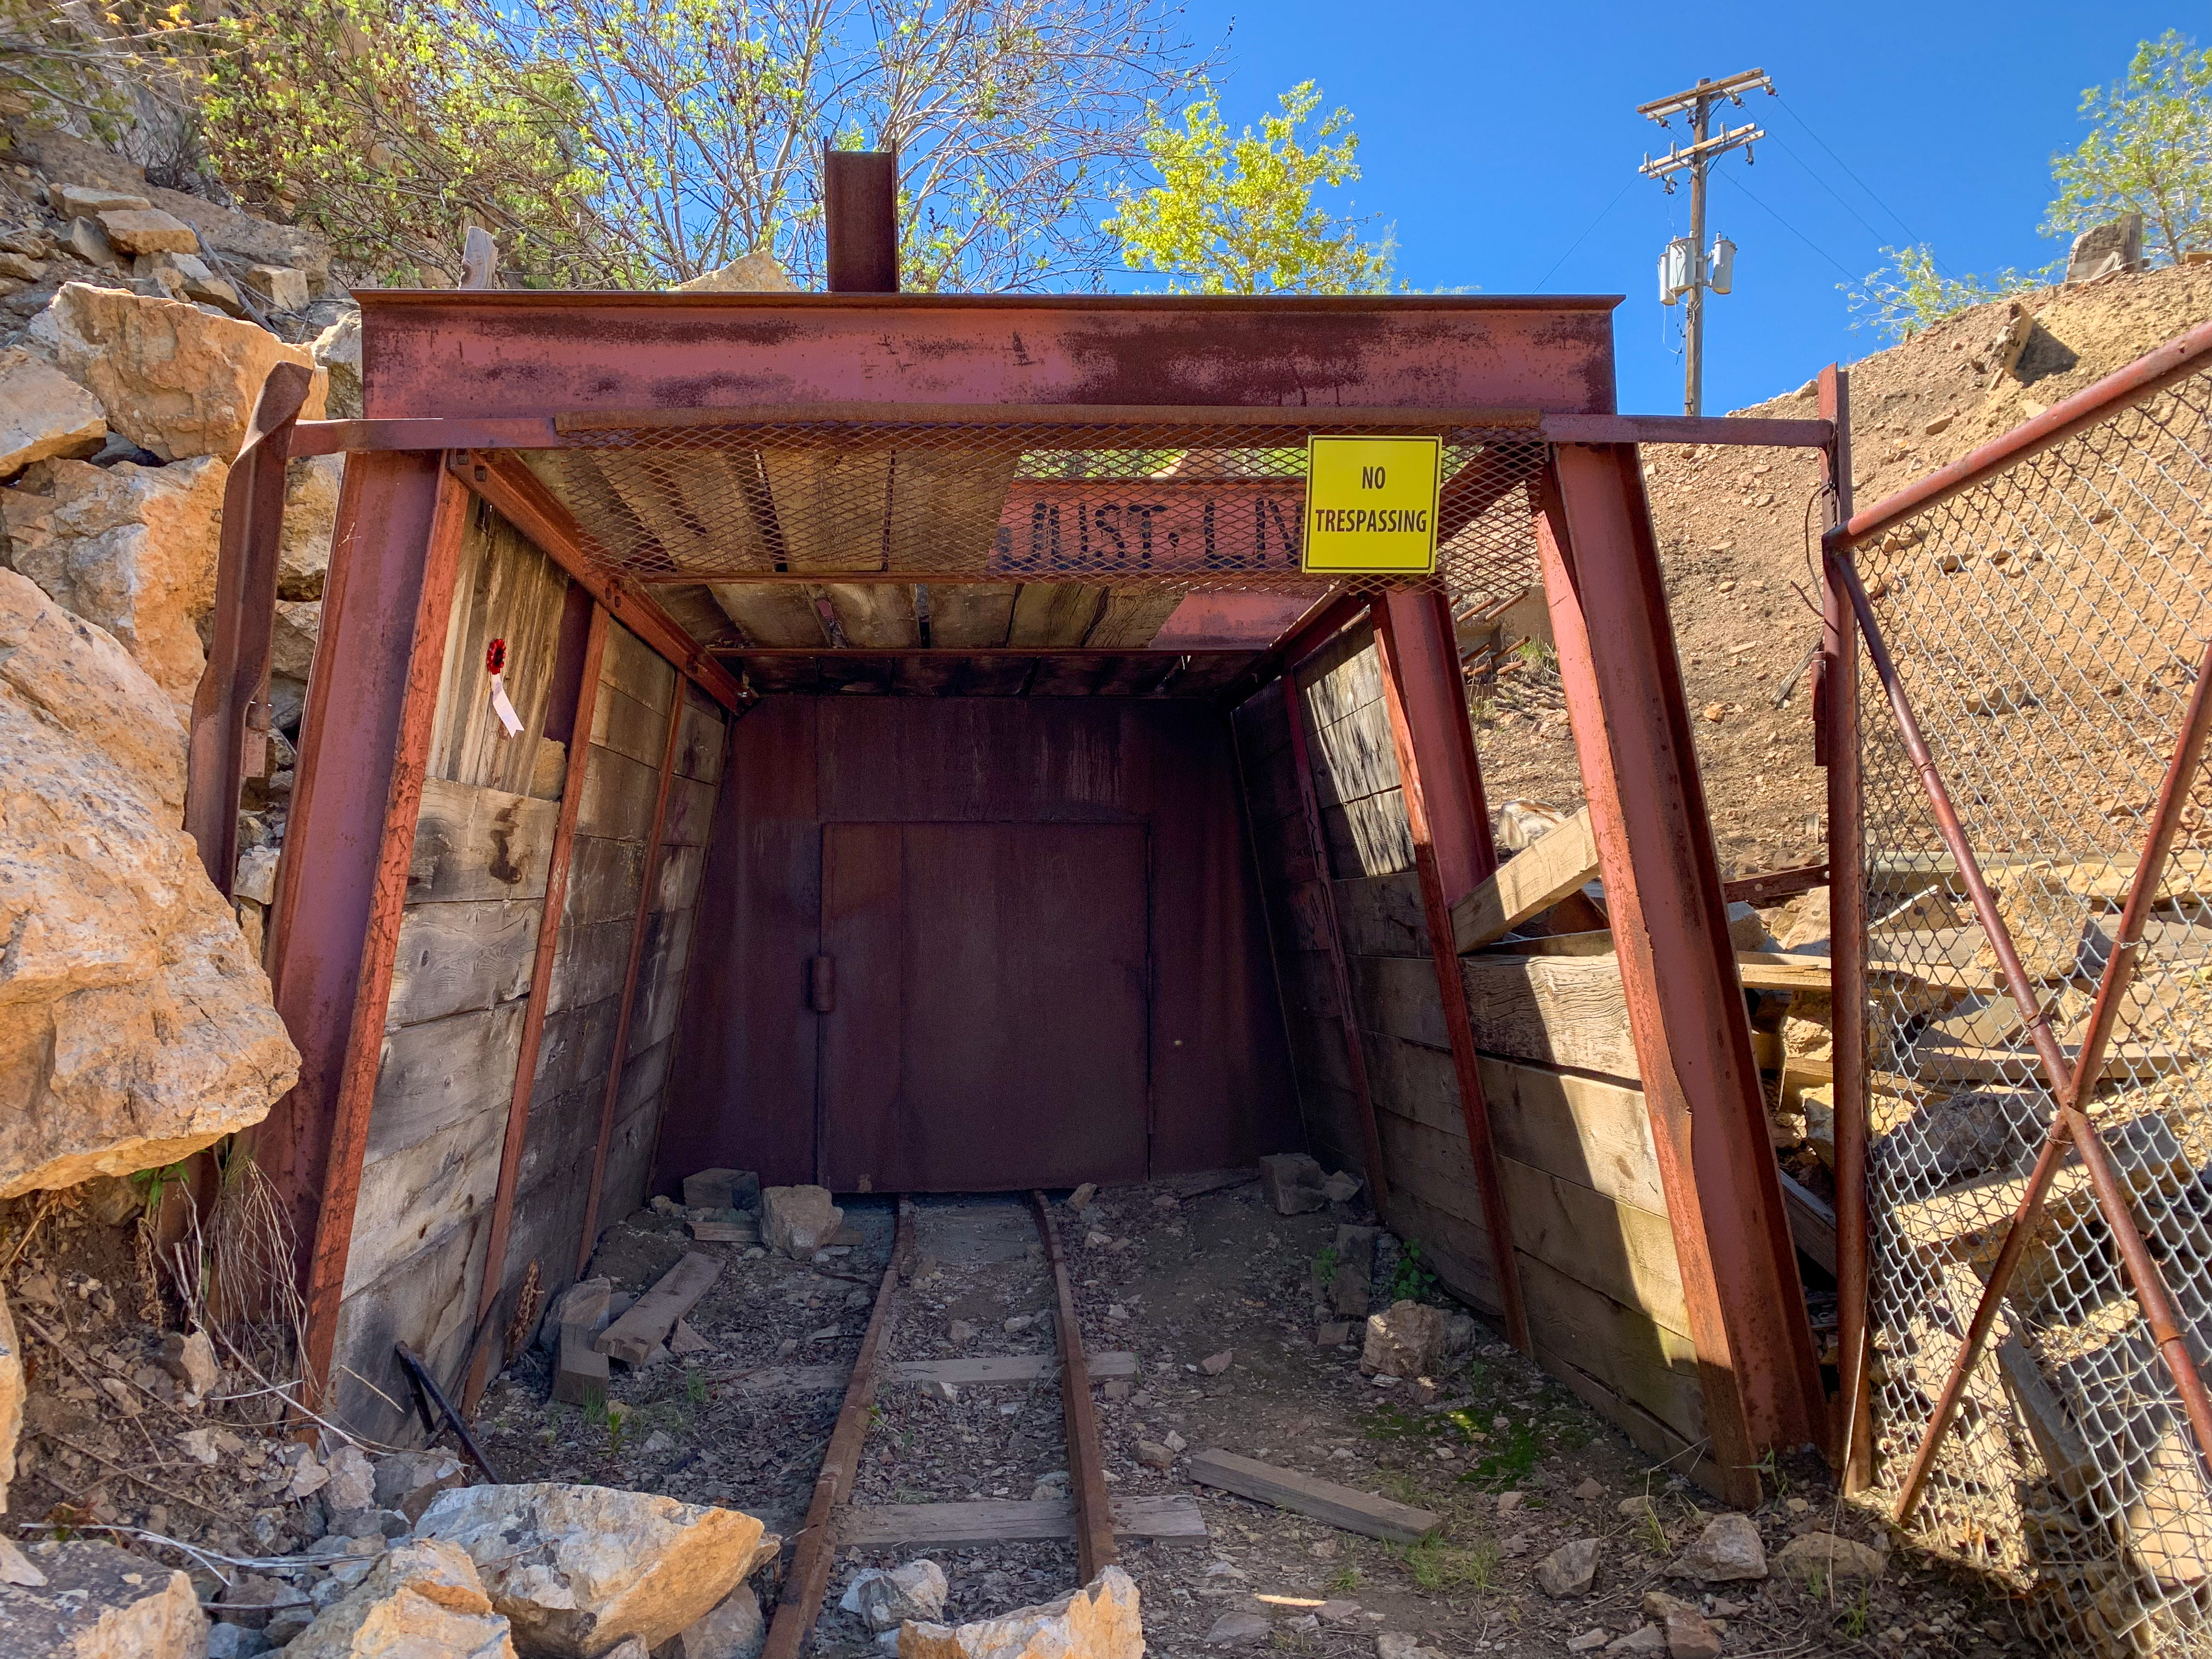 Entrance to a Mine Shaft